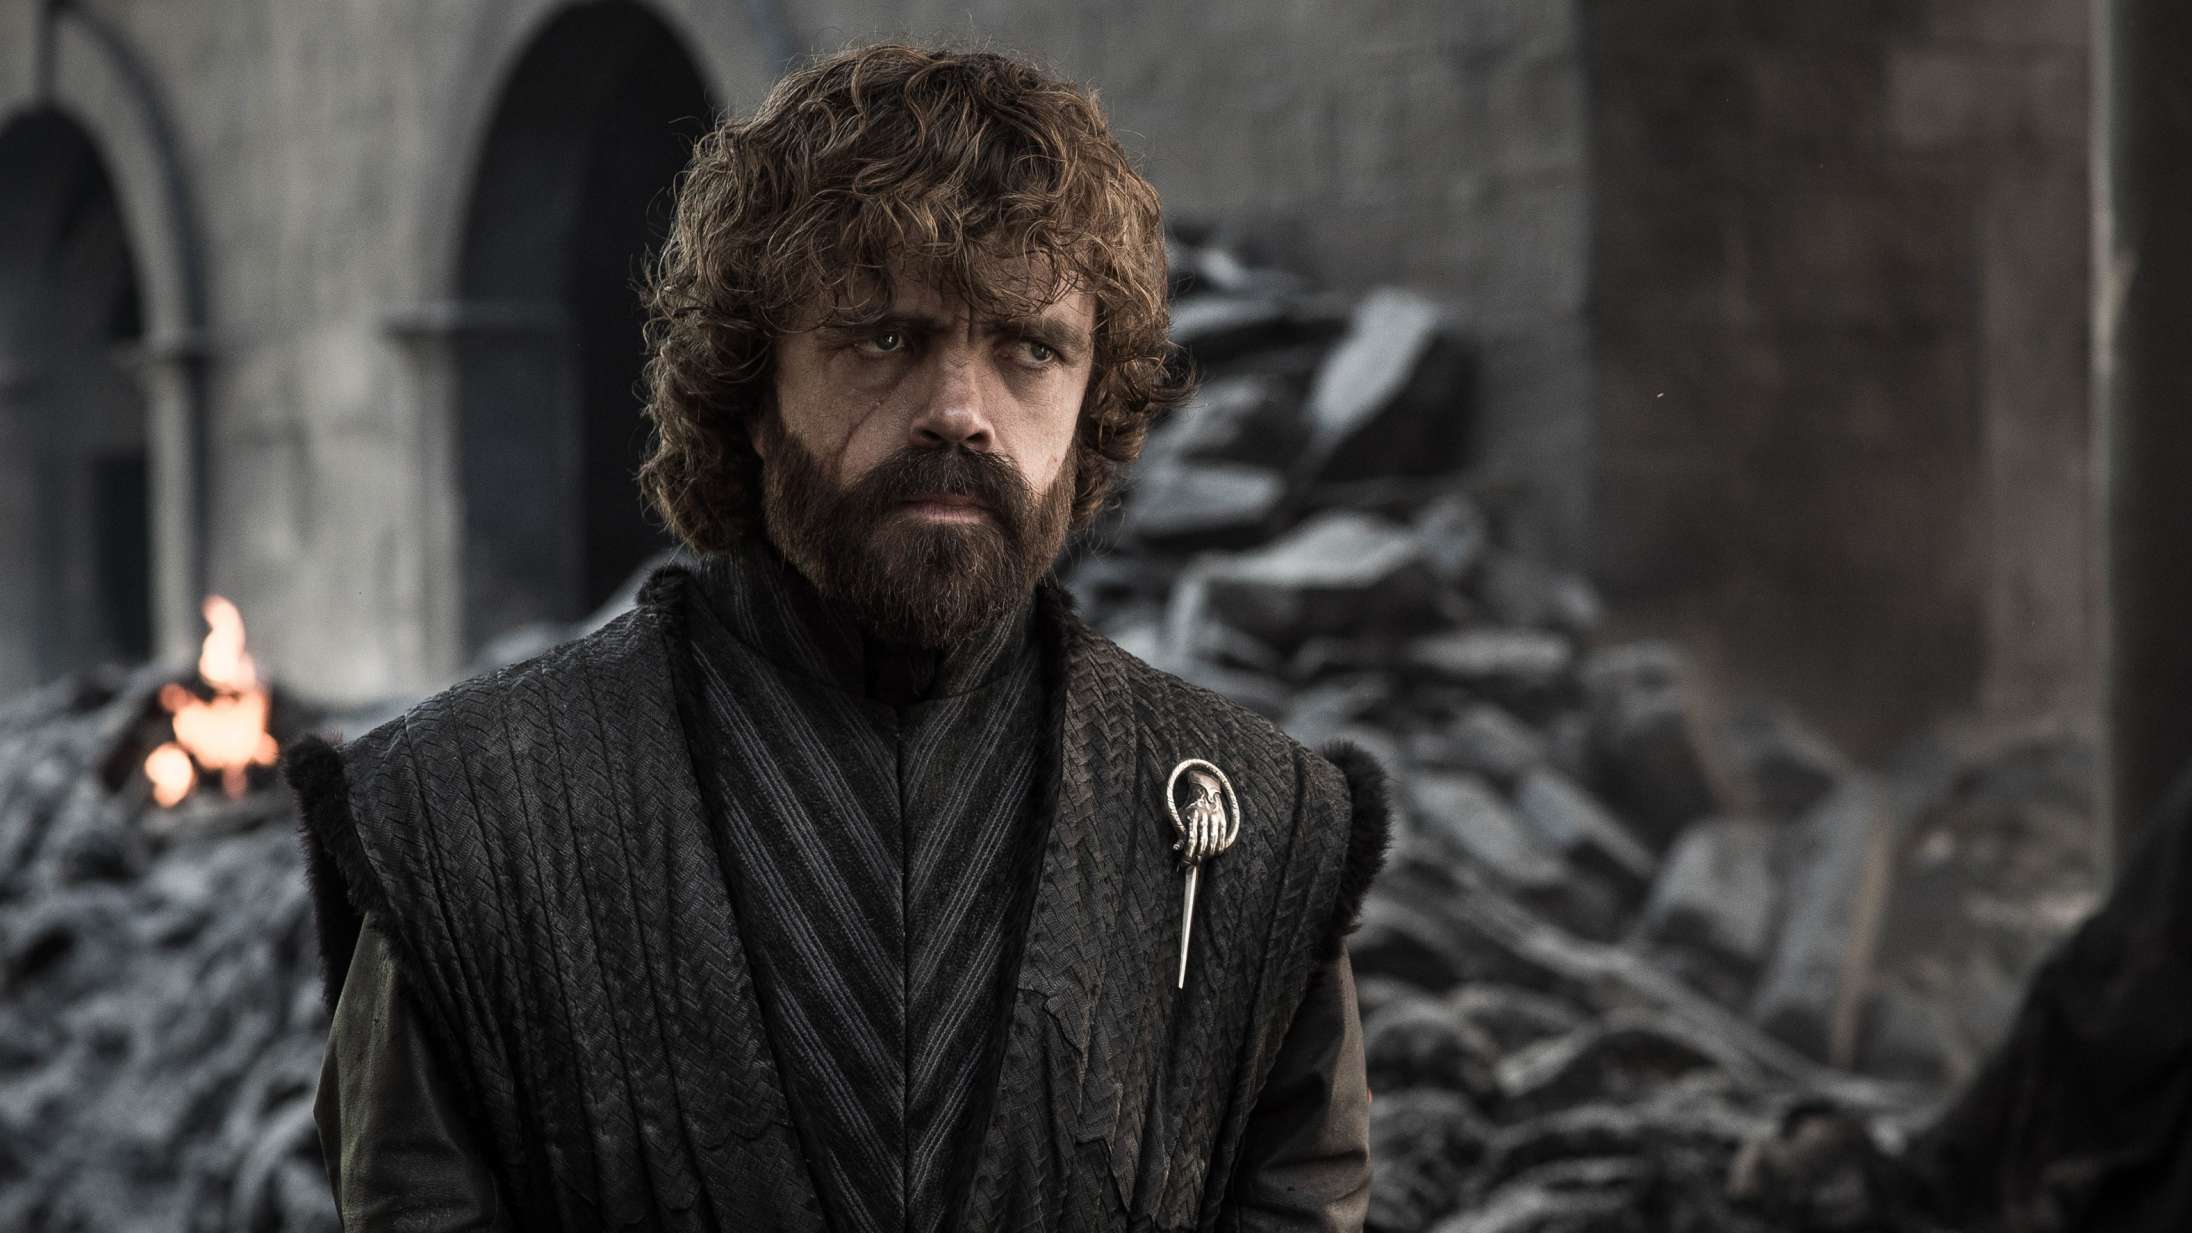 Peter Dinklage forsvarer ‘Game of Thrones’-finalen: »Det er fiktion. Der er drager i serien. Kom nu videre«